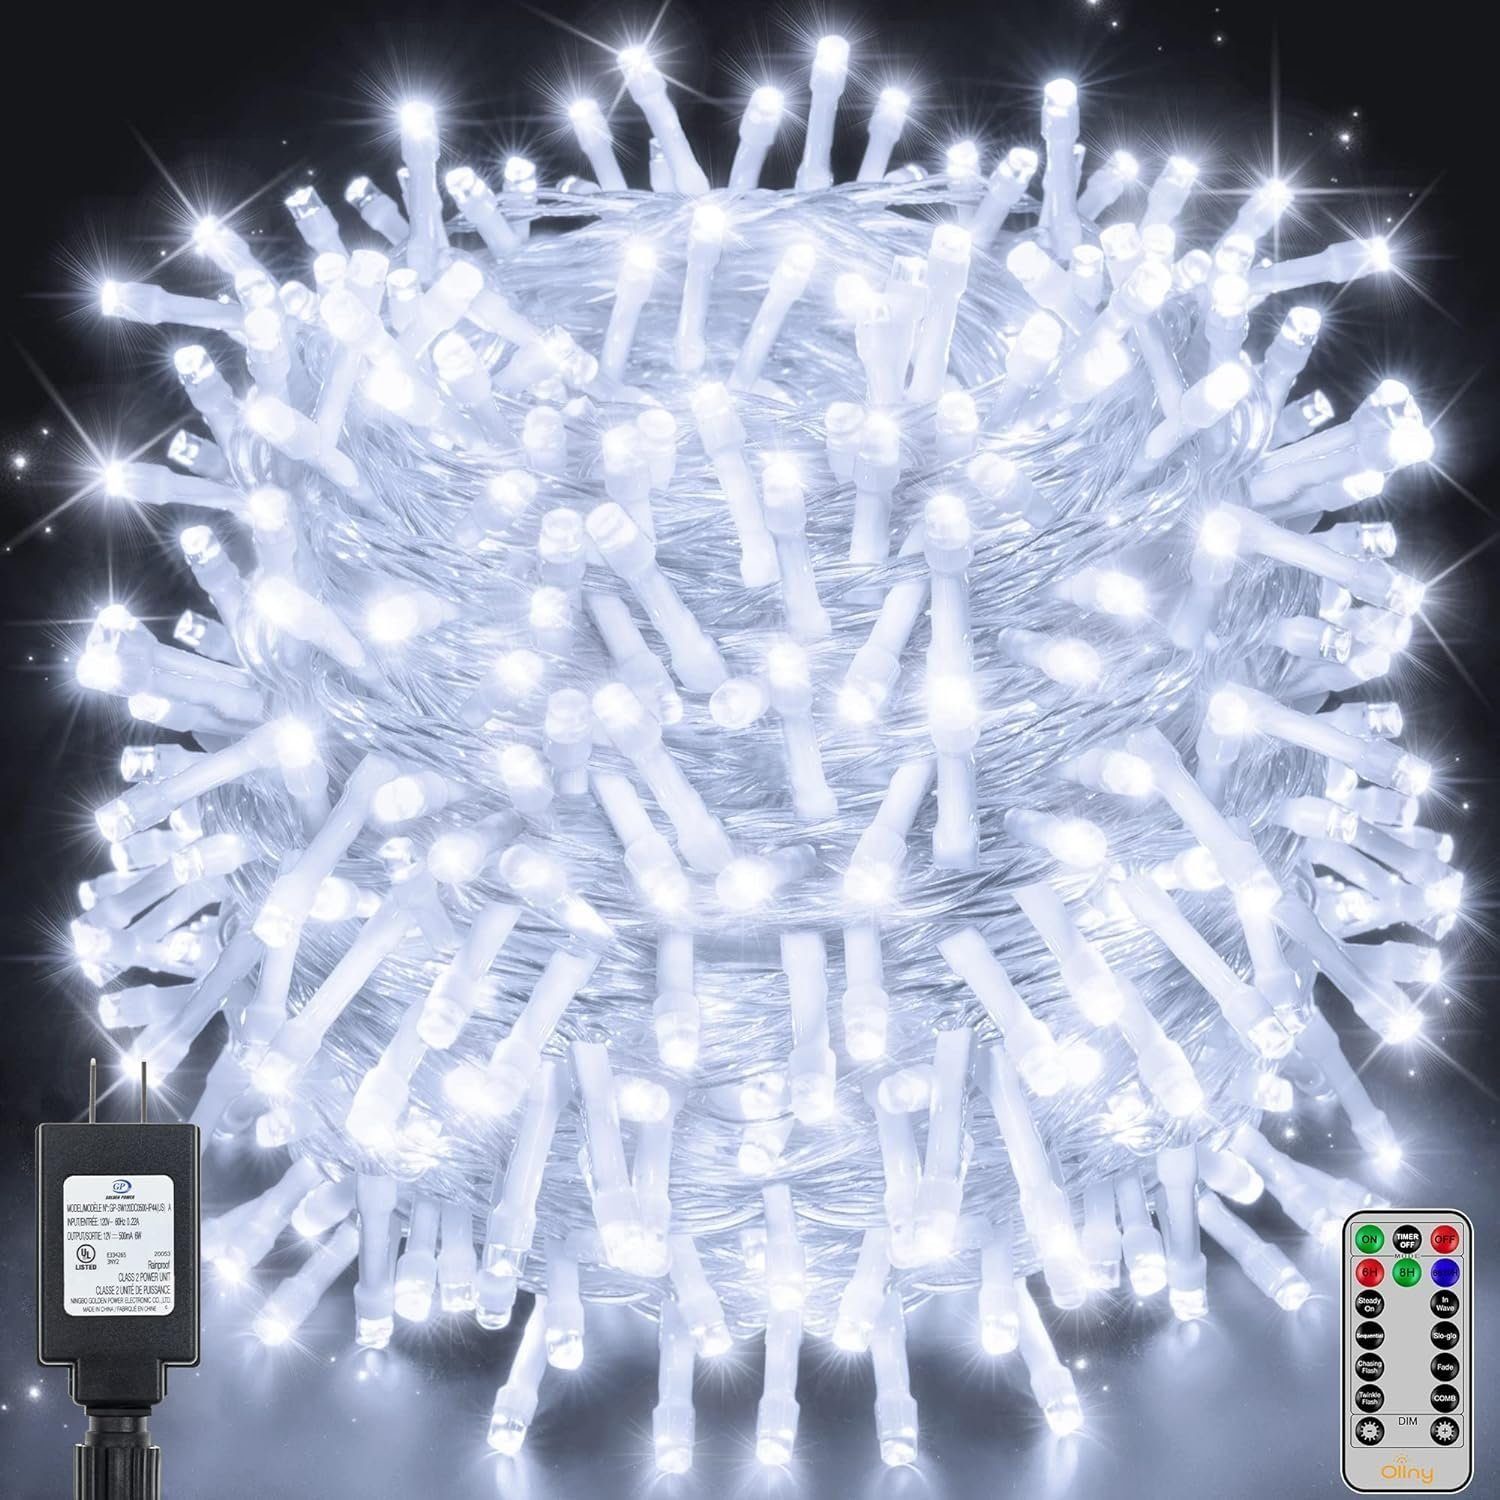 Diyarts LED-Lichterkette, 400-flammig, 60m LED Helligkeitsstufen. 8 vielseitige Beleuchtung, 4 Modi